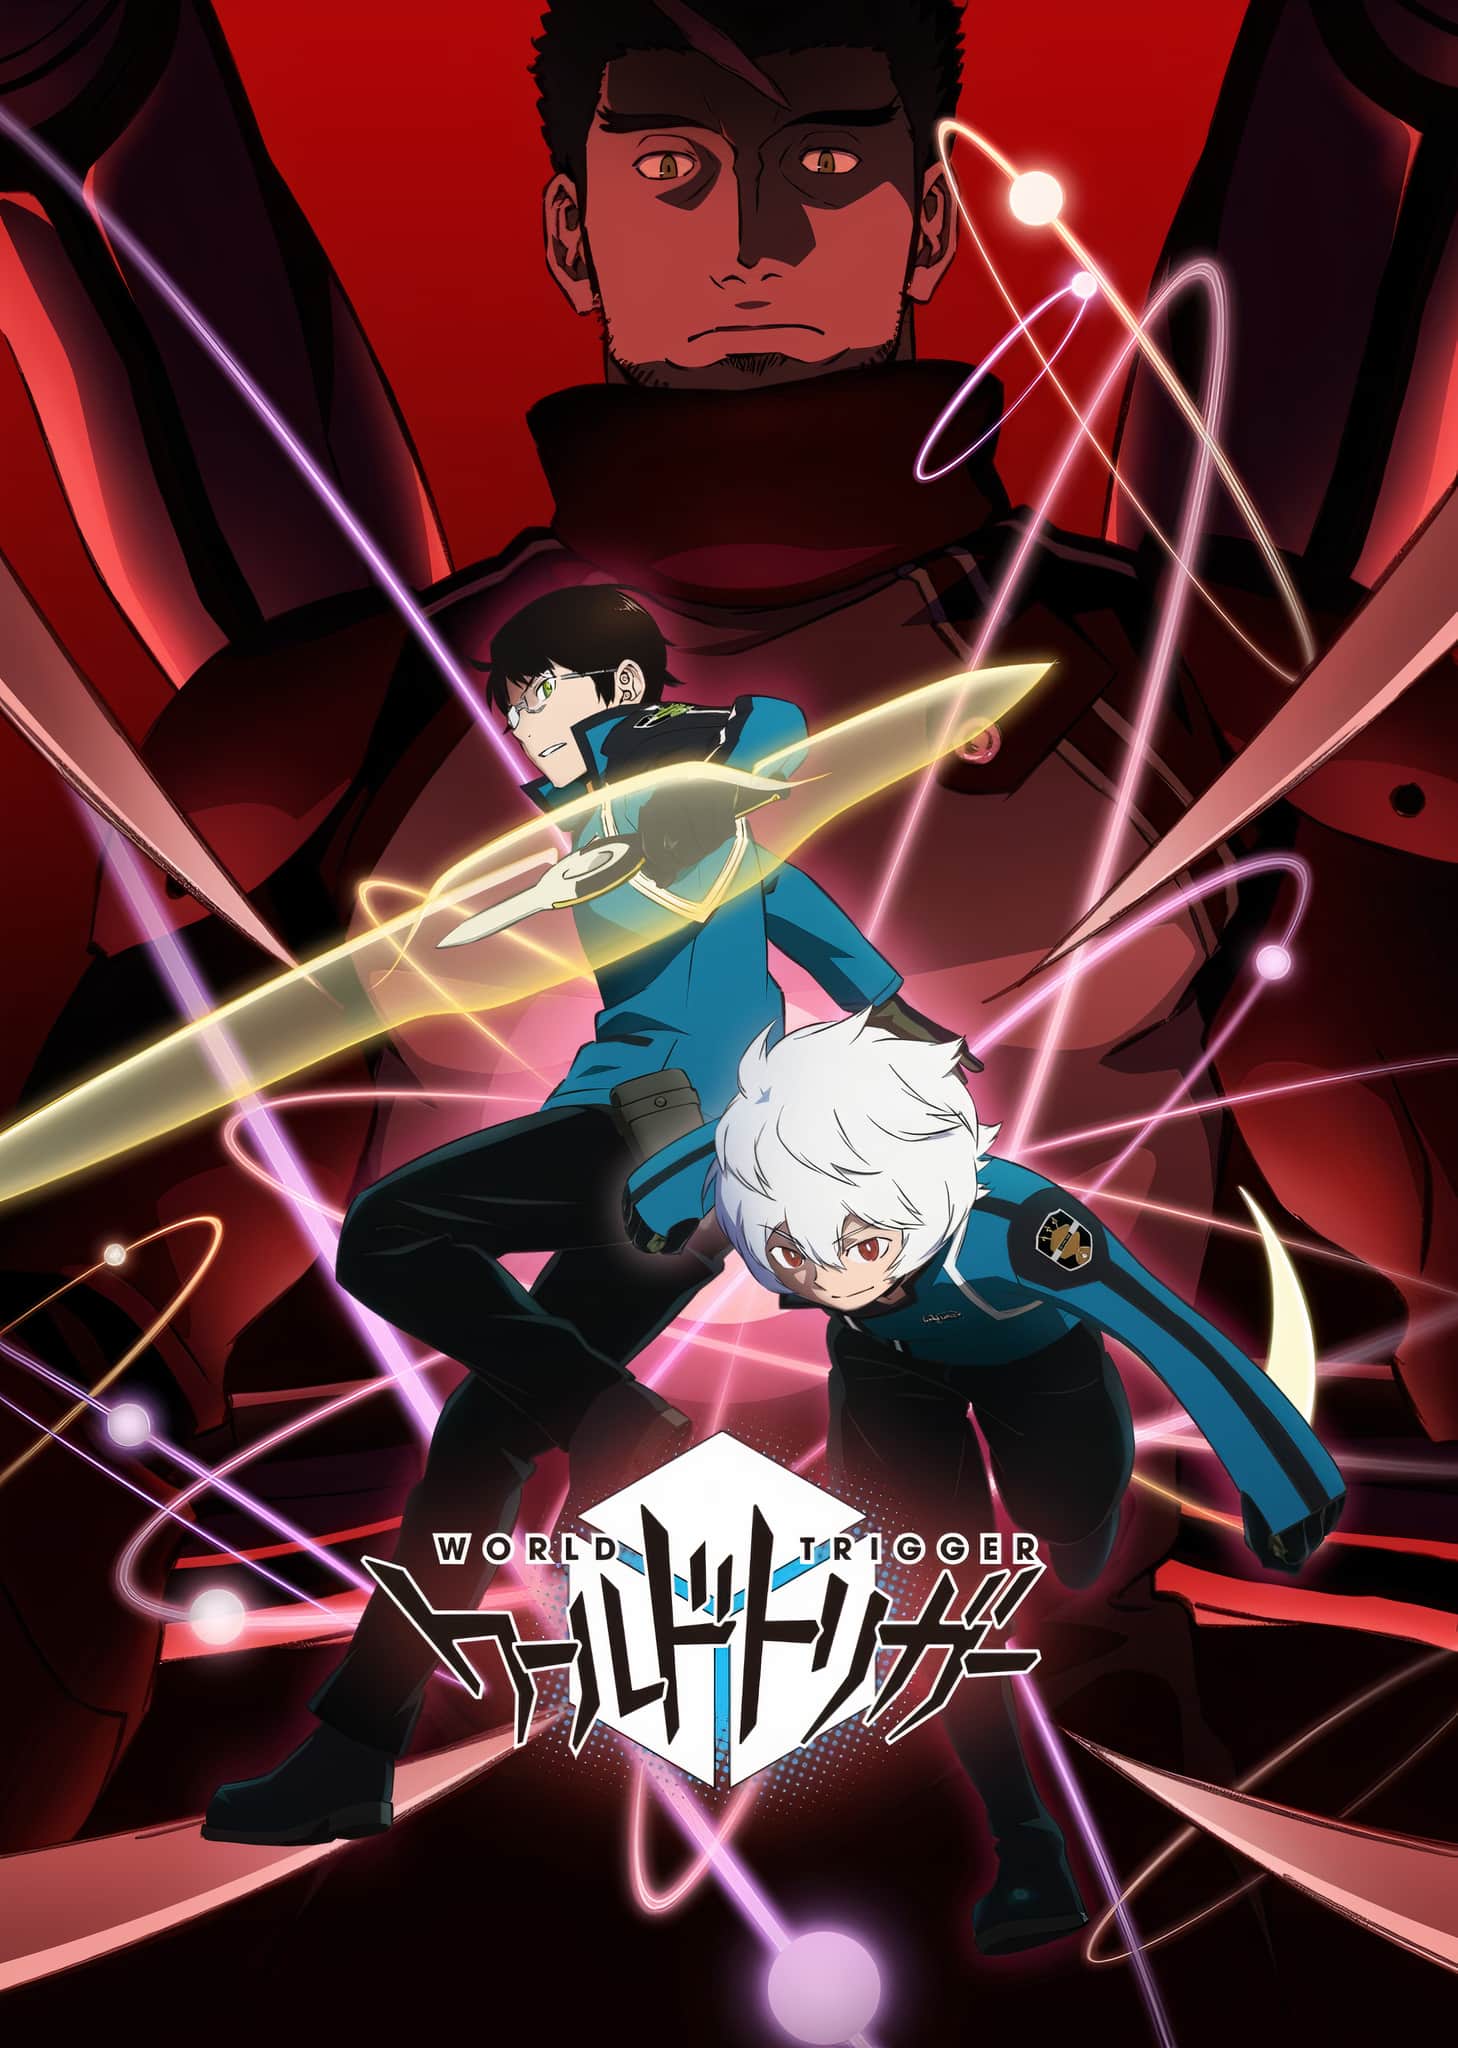 Annonce de anime World Trigger Saison 2 en troisième visuel